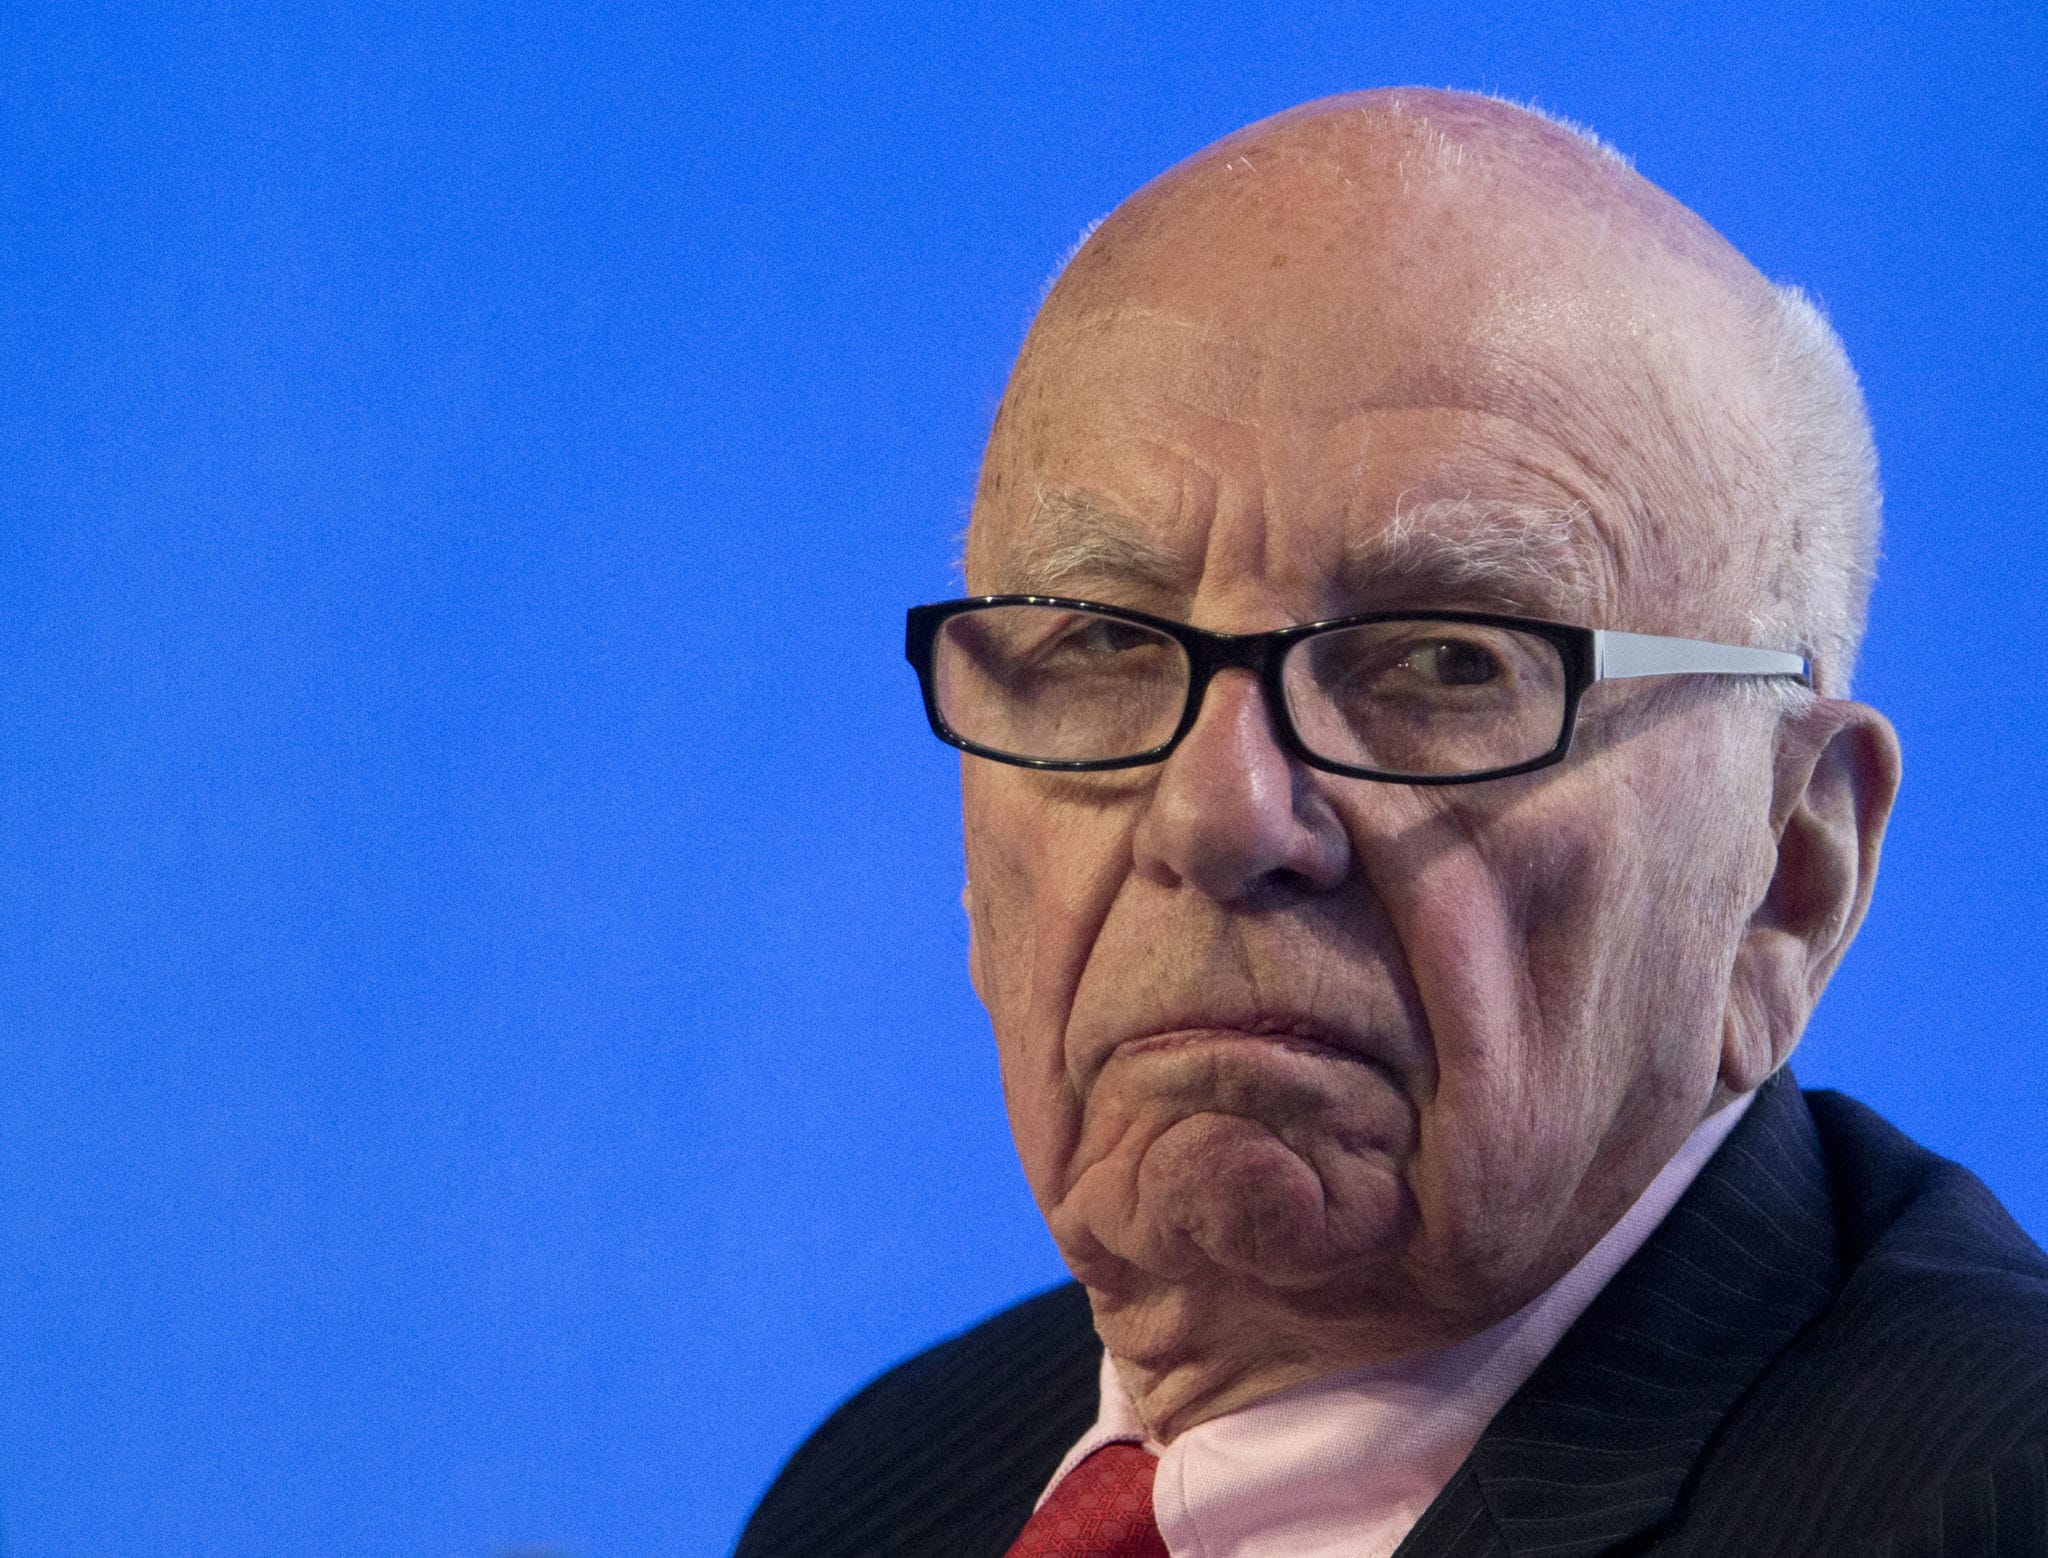 Rupert Murdoch, executive chairman of News Corp